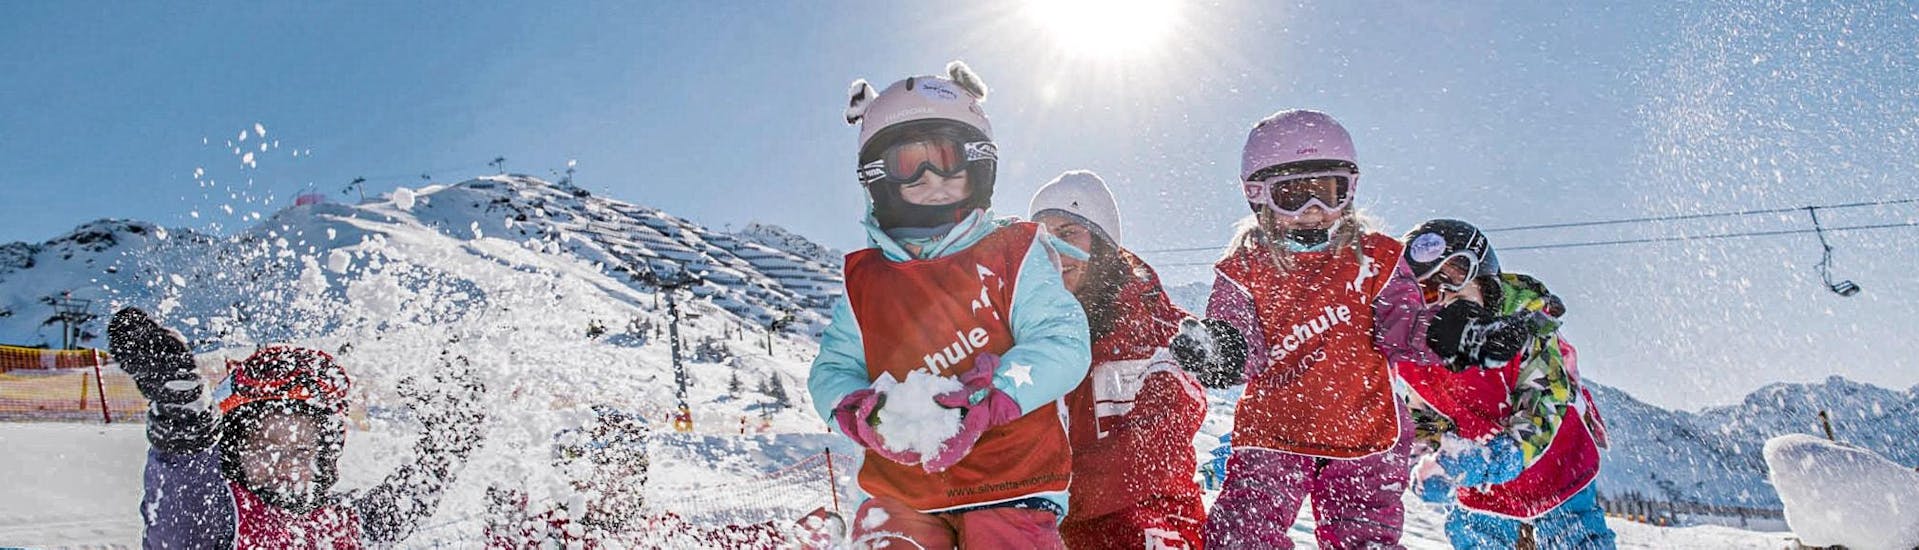 Lezioni di sci per bambini a partire da 3 anni principianti assoluti con Skischule Schruns.